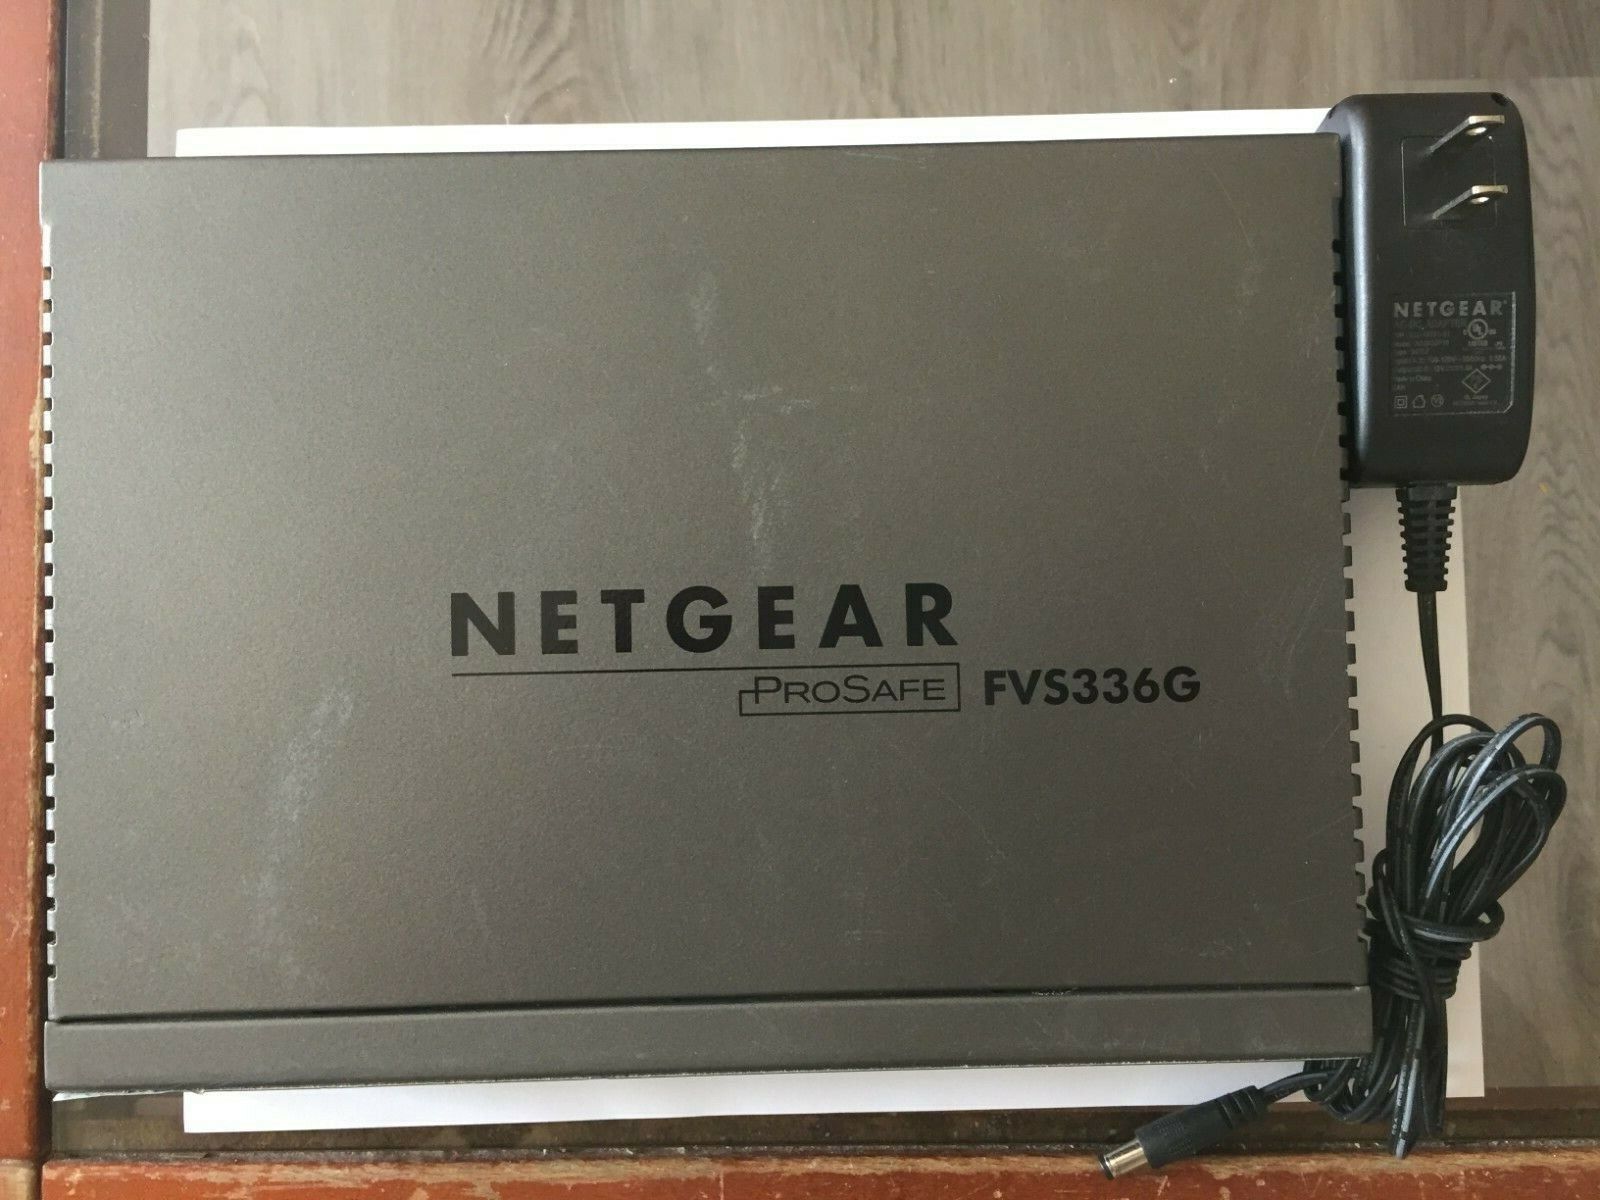 Netgear ProSAFE FVS336G V2 Dual WAN Gigabit SSL VPN Firewall Router